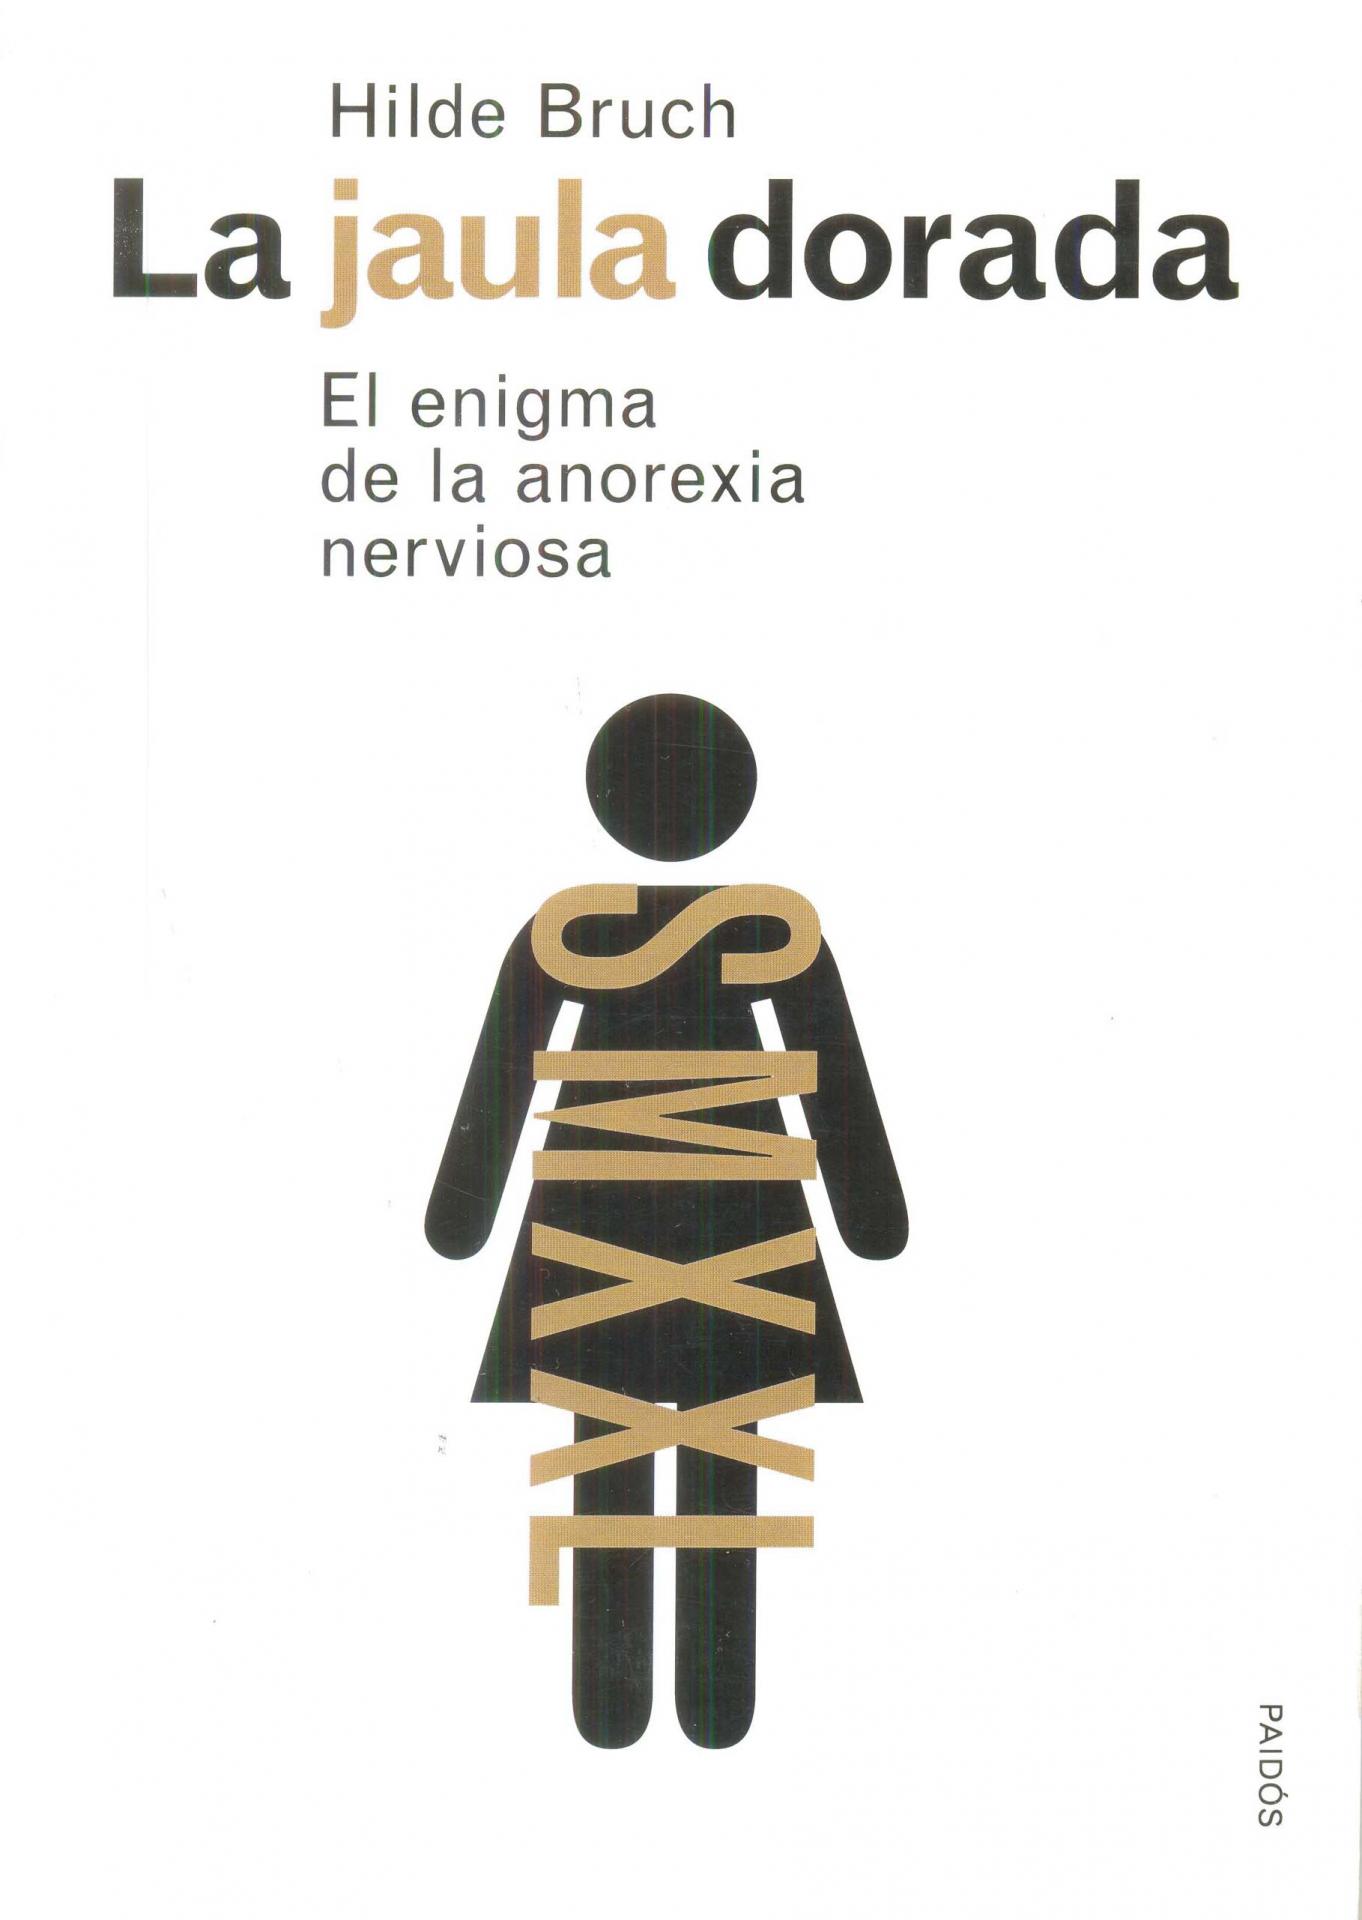 LA JAULA DORADA. El enigma de la anorexia nerviosa. Bruch, H.